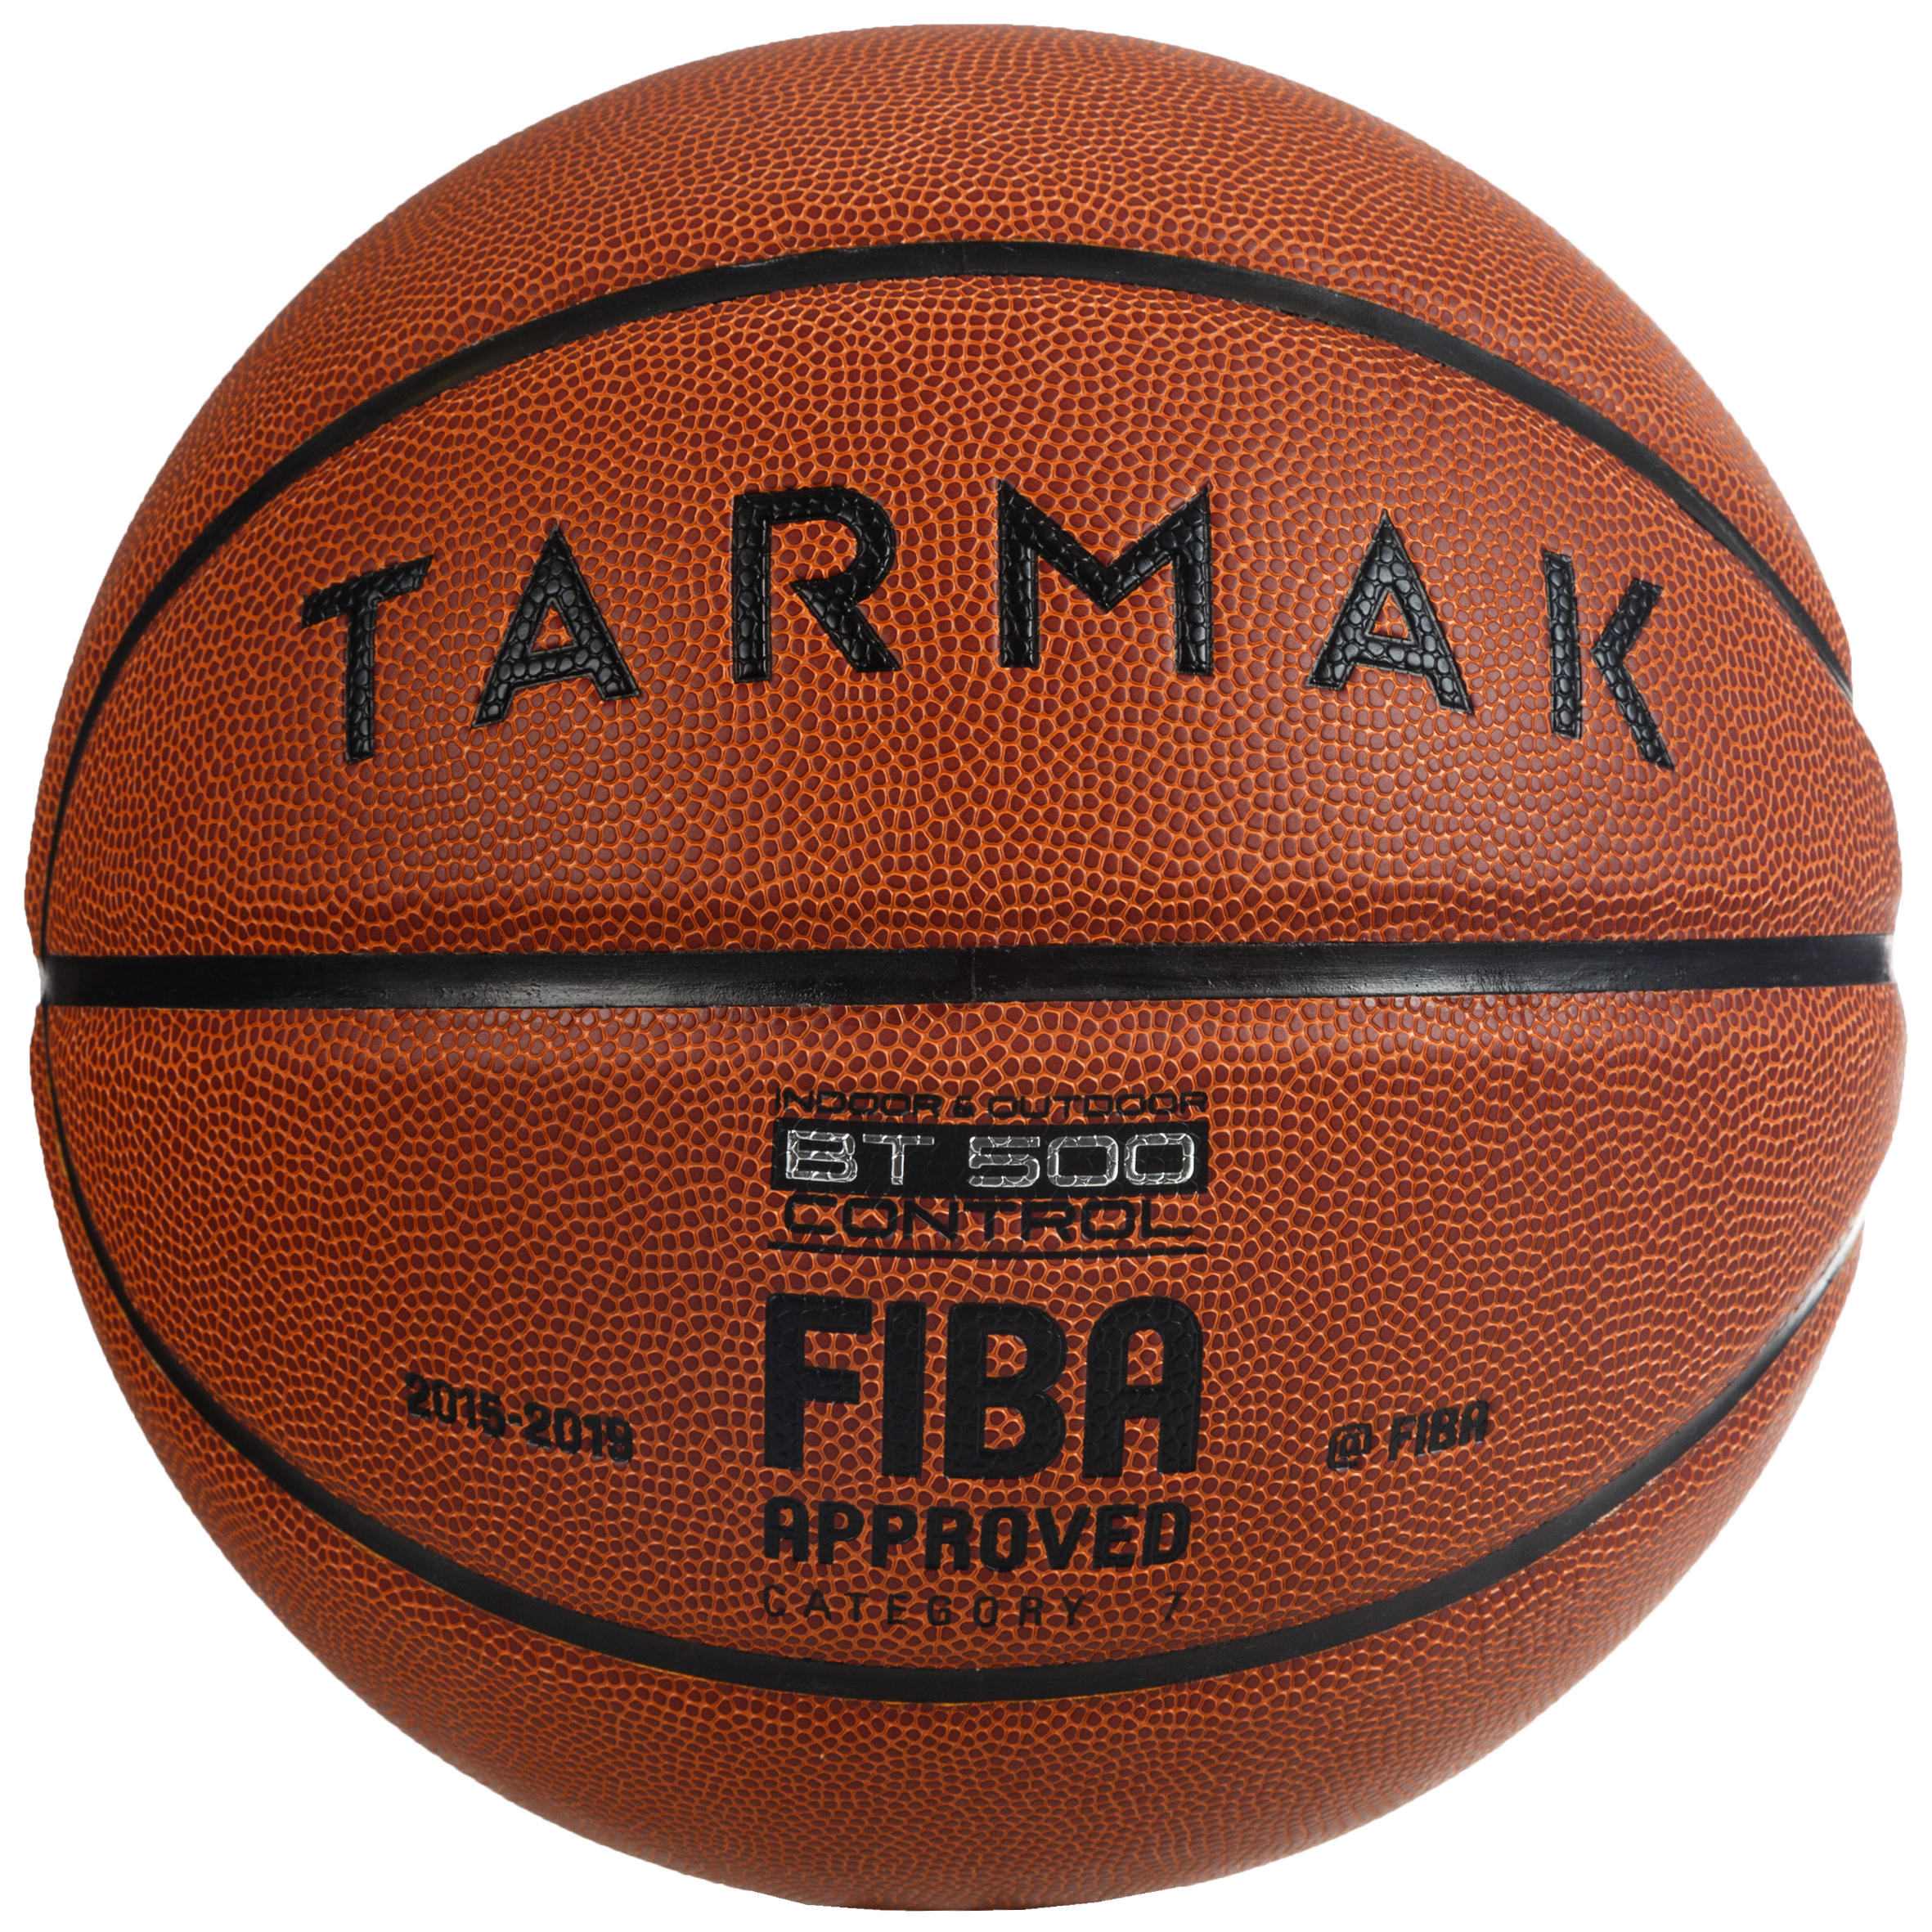 ลูกบาสเก็ตบอลรุ่น BT500 FIBA เบอร์ 7 (สีน้ำตาล) ด่วน ของมีจำนวนจำกัด